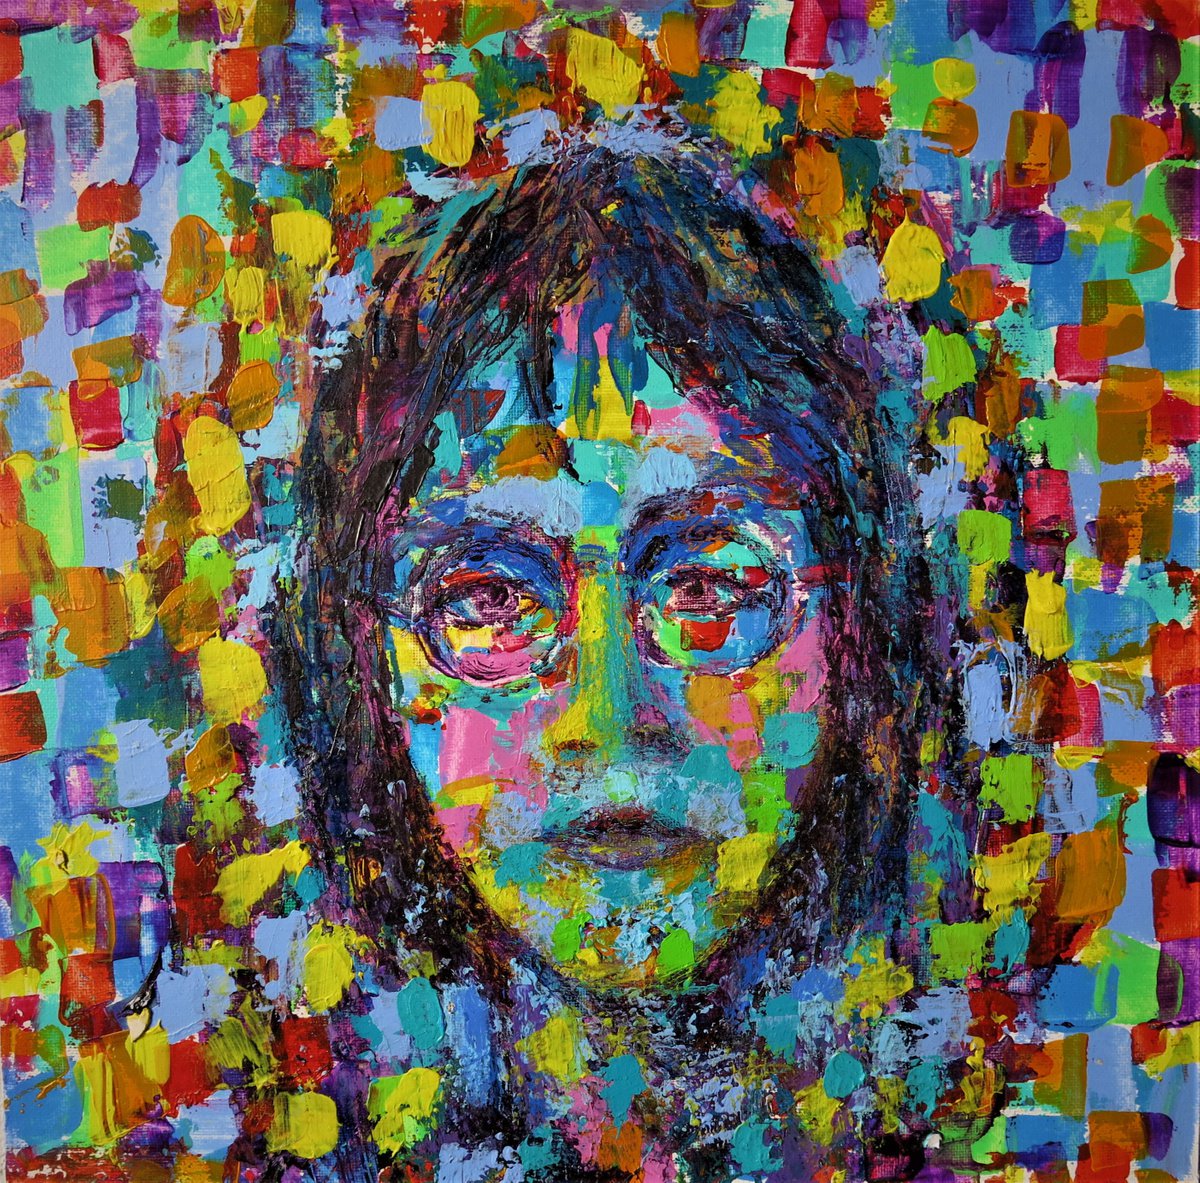 Reincarnation of John Lennon or Girls portrait by Denis Kuvayev